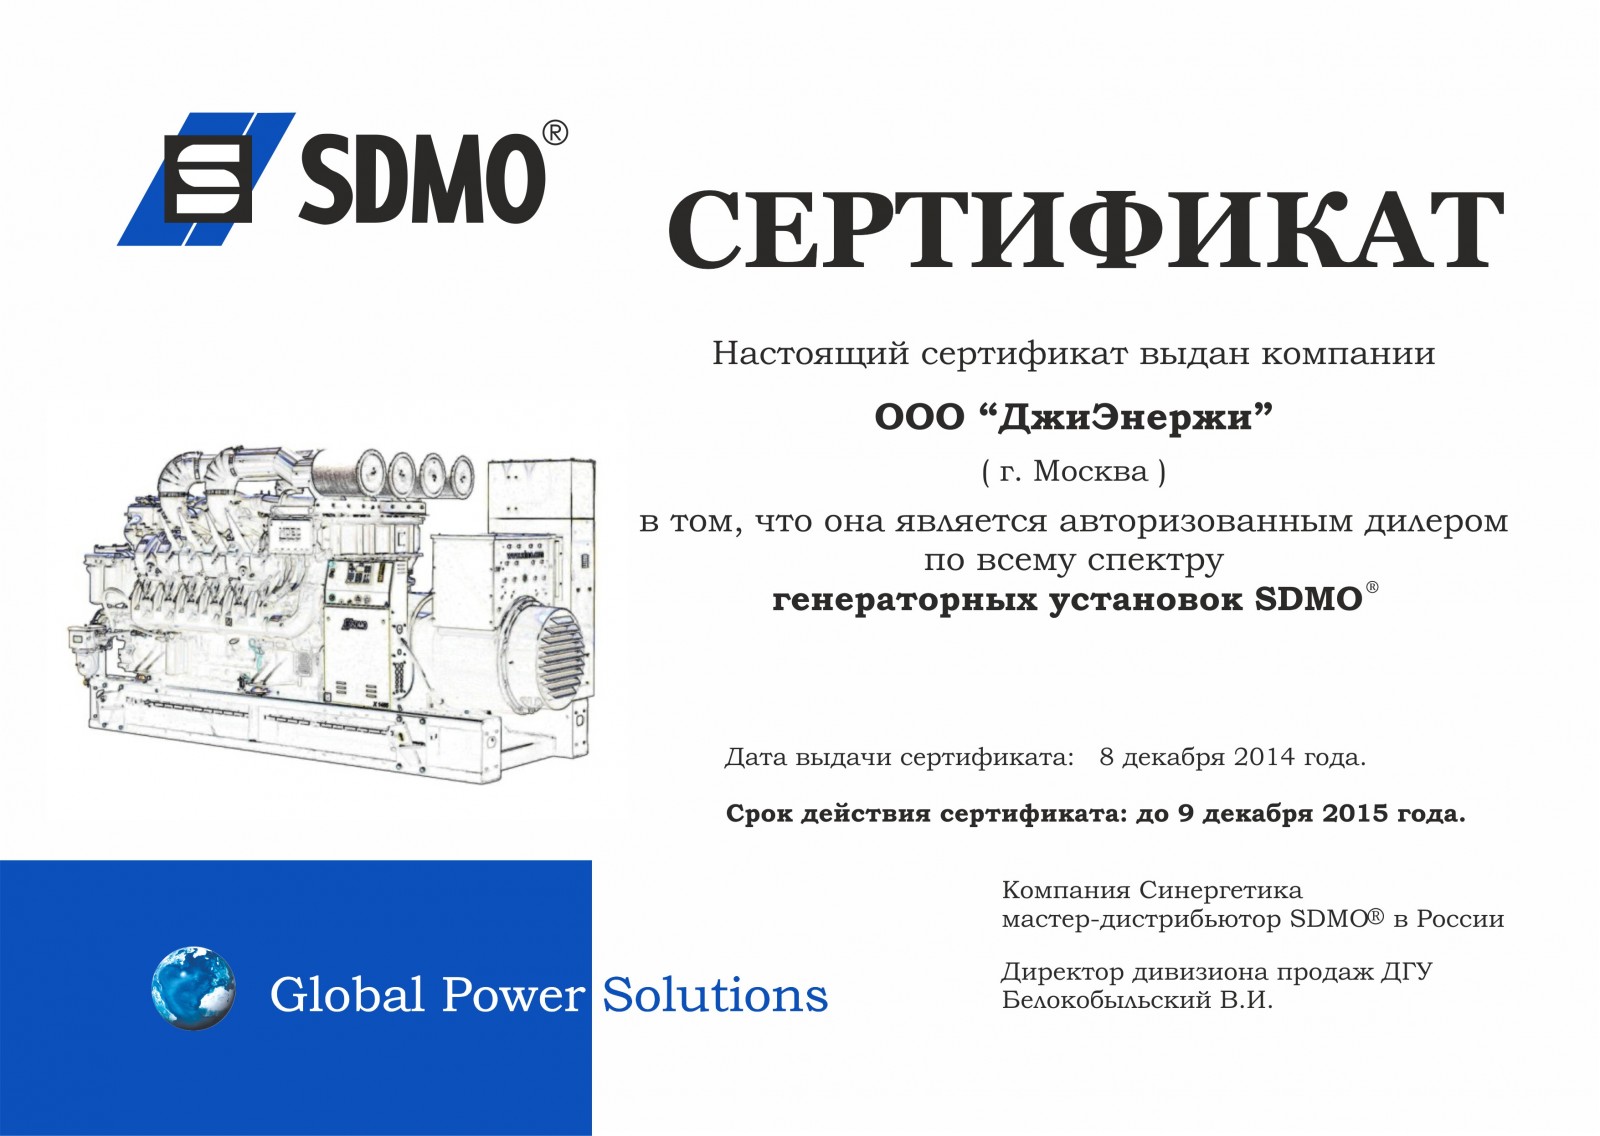 SDMO certificate